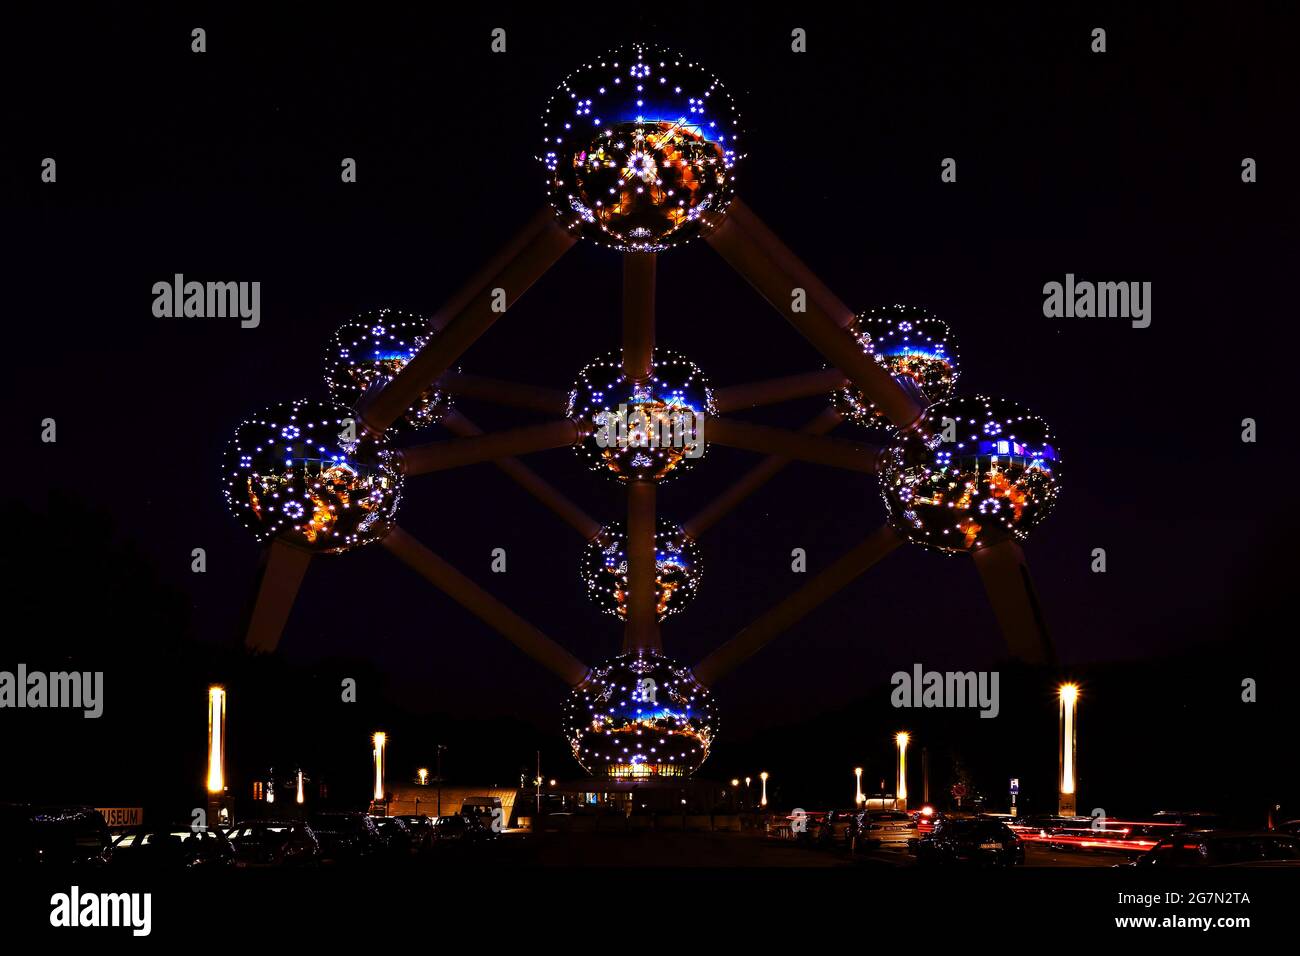 Atomium - Darstellung einer chemischen Verbindung aus Aluminium  im weltbekannten Bauwerk in Brüssel anlässlich einer Expo in Belgien Stock Photo